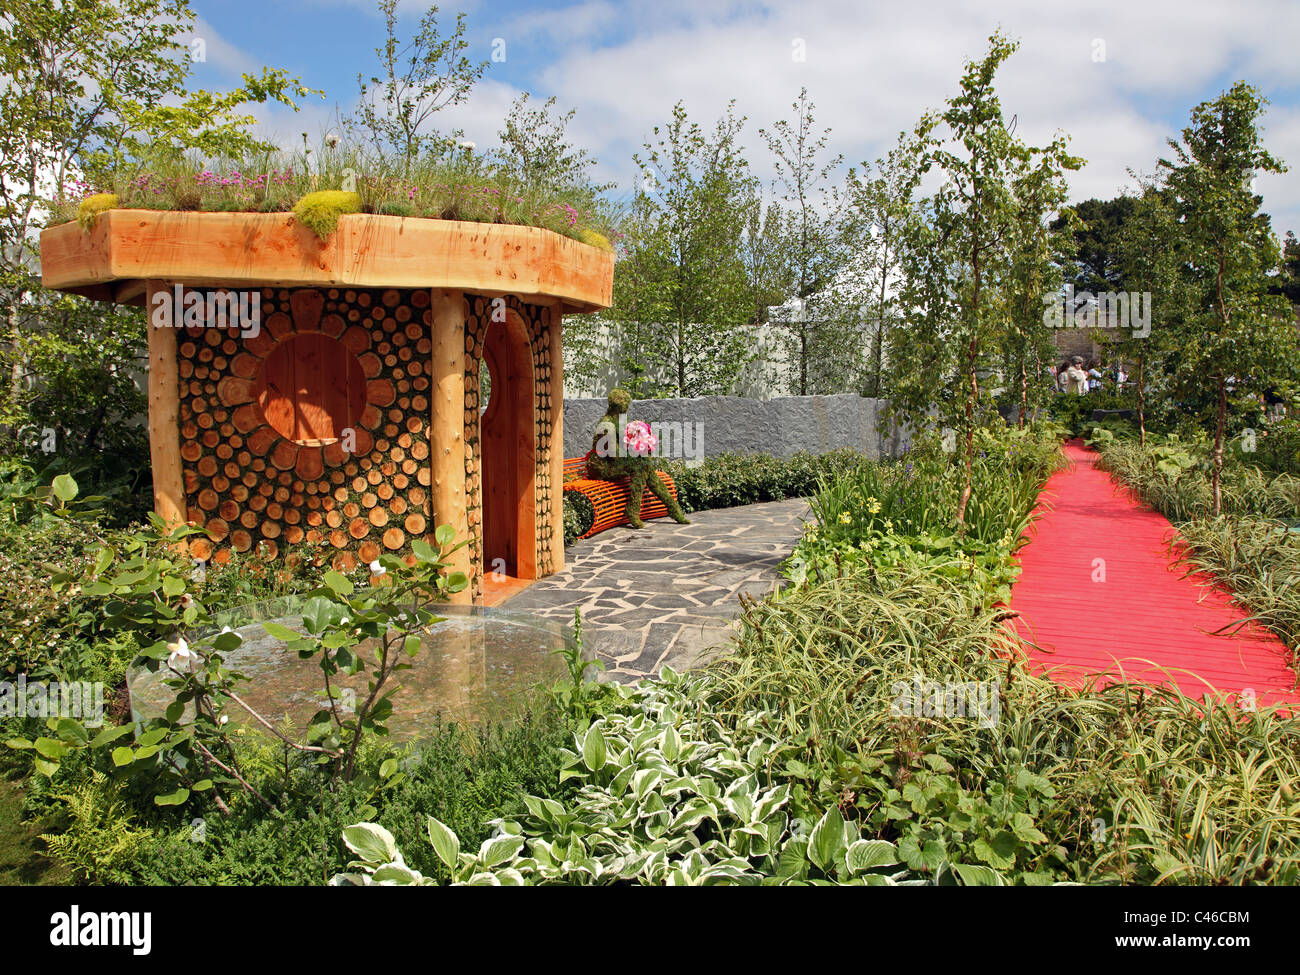 Jardin, jardin spectacle Growise par Tim Austen pour Bloom, Phoenix Park, Dublin, Irlande Banque D'Images